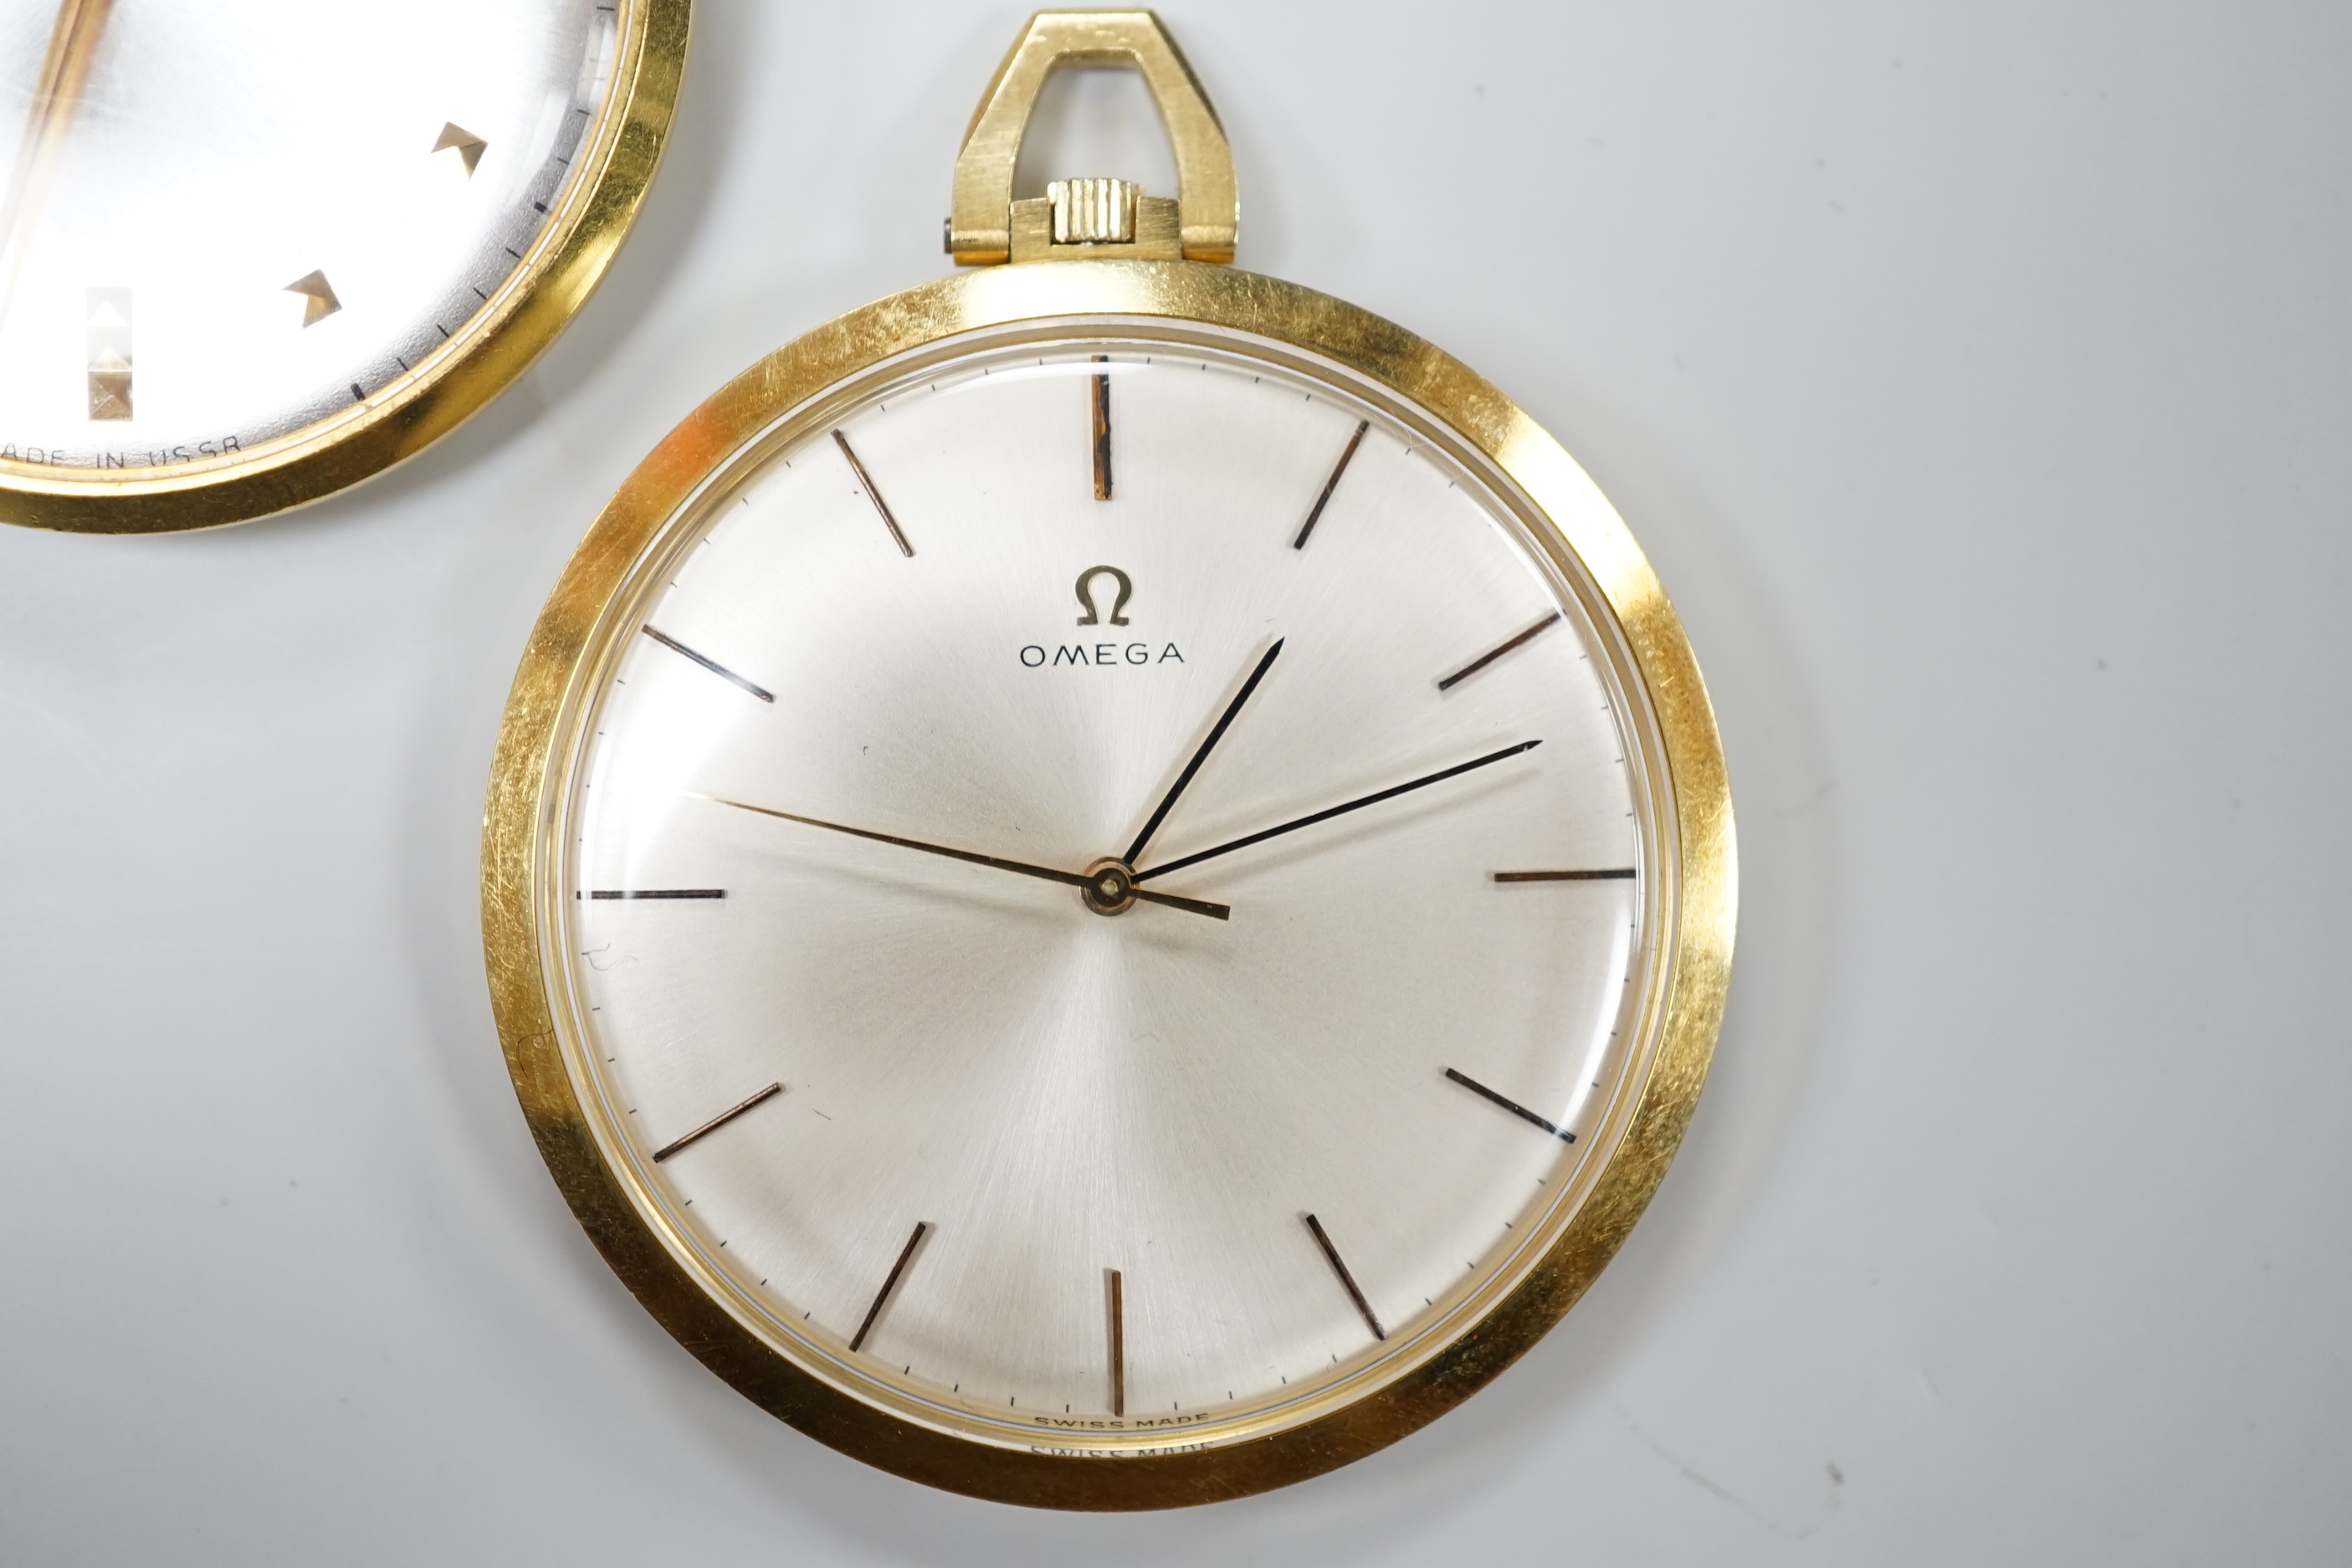 A 750 yellow metal Omega open faced keyless dress pocket watch, case diameter 42mm, gross weight 43.1 grams and a Rukela dress pocket watch.